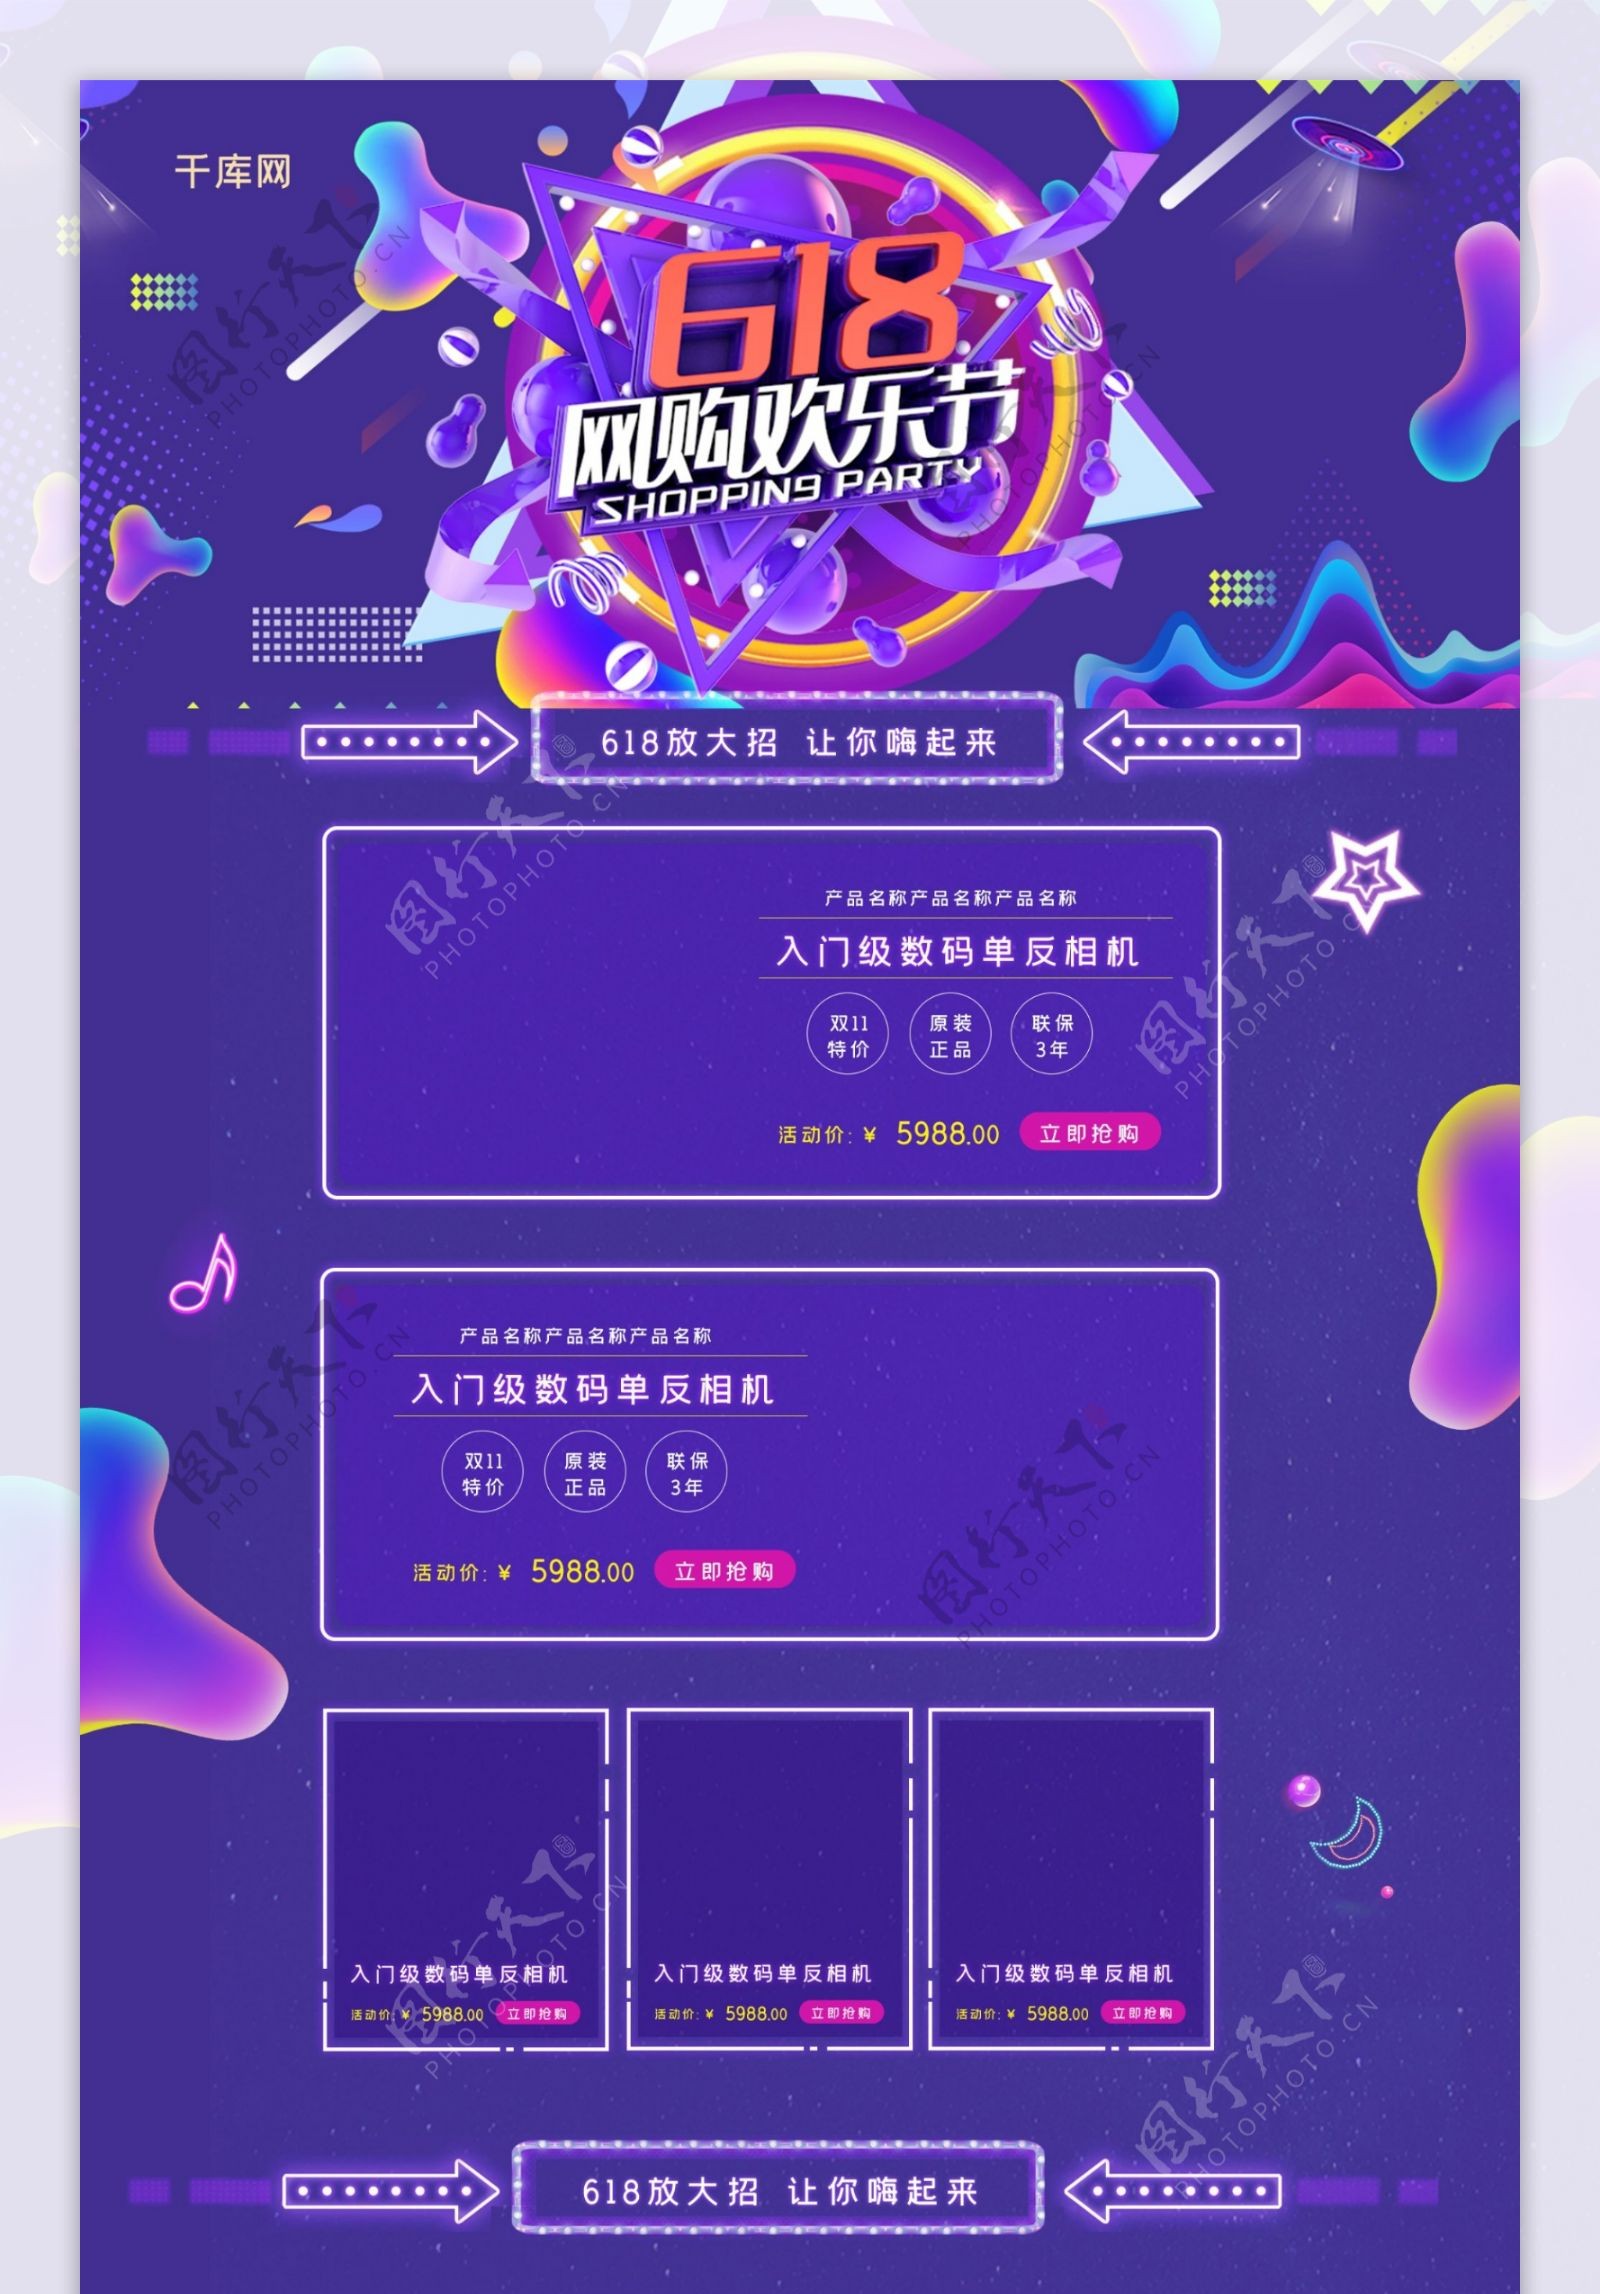 618网购欢乐节C4D炫酷蓝色电商淘宝首页模板